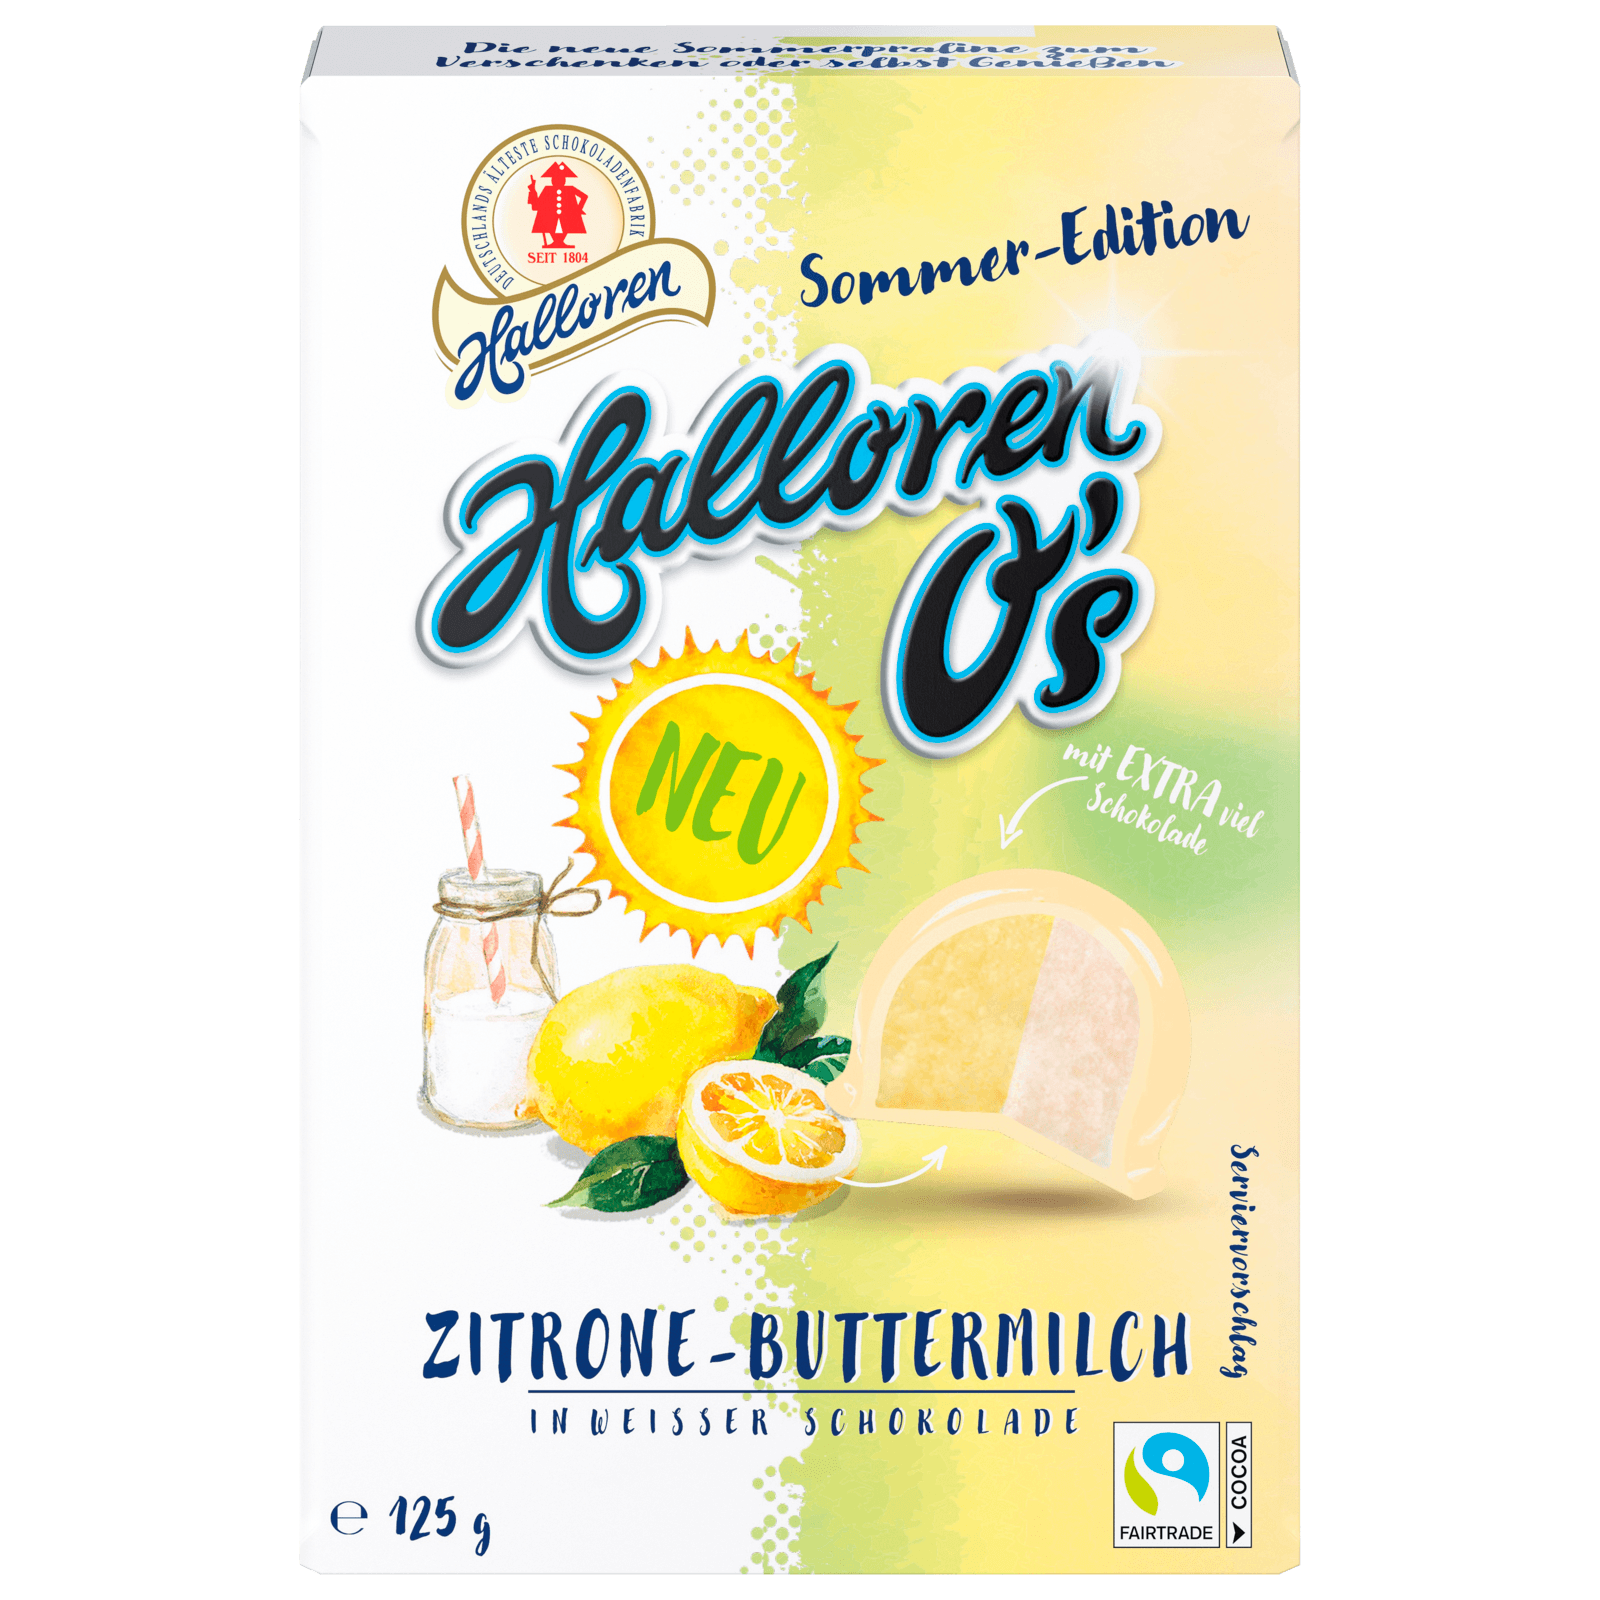 Halloren O\'s Zitrone-Buttermilch in weißer Schokolade 125g bei REWE online  bestellen!